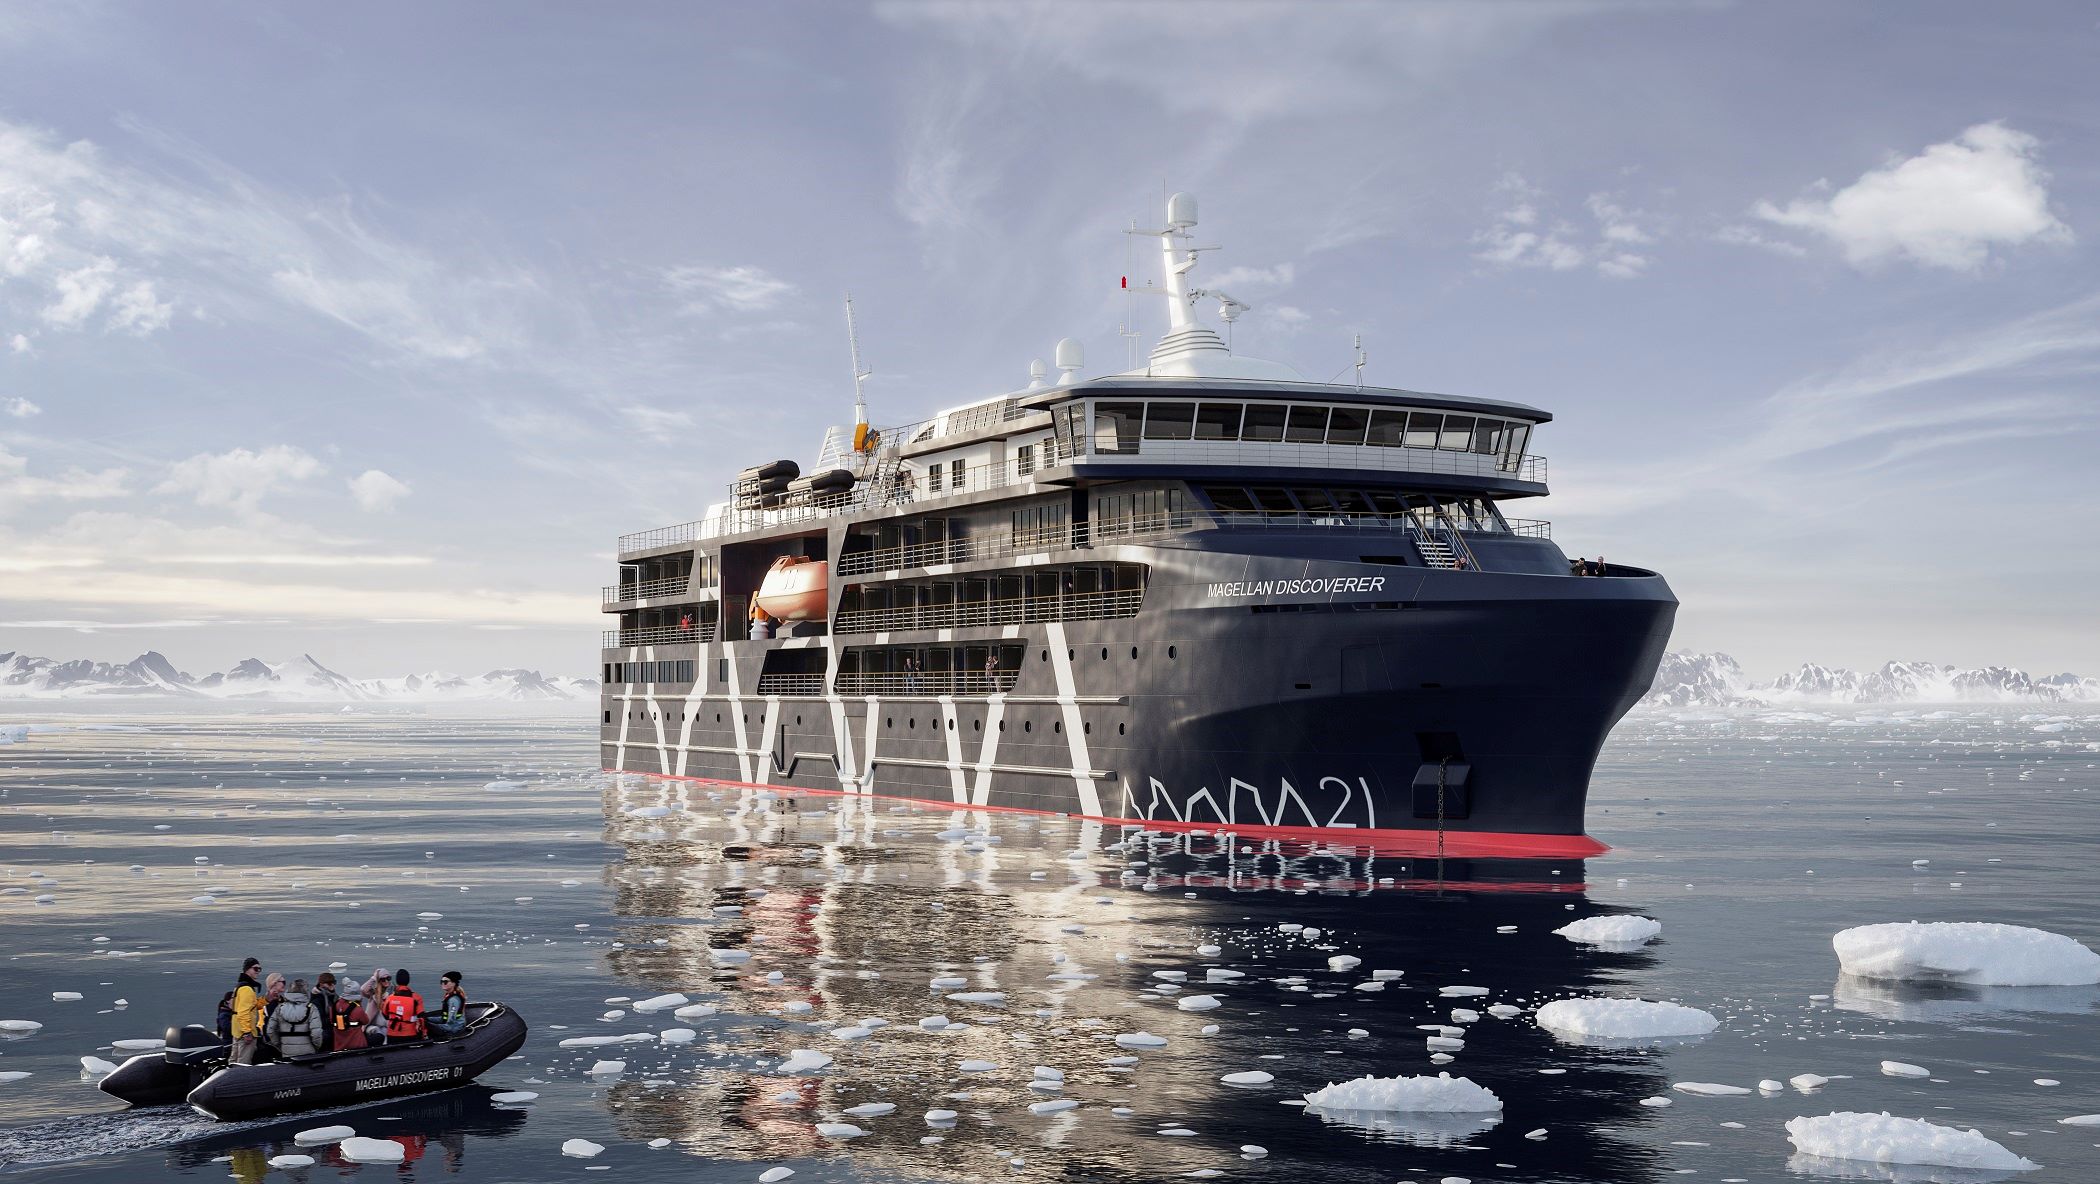 Turismo al Polo Sur: Asenav y Antarctica21 inician construcción del «Magellan Discoverer» un lujoso crucero híbrido-eléctrico